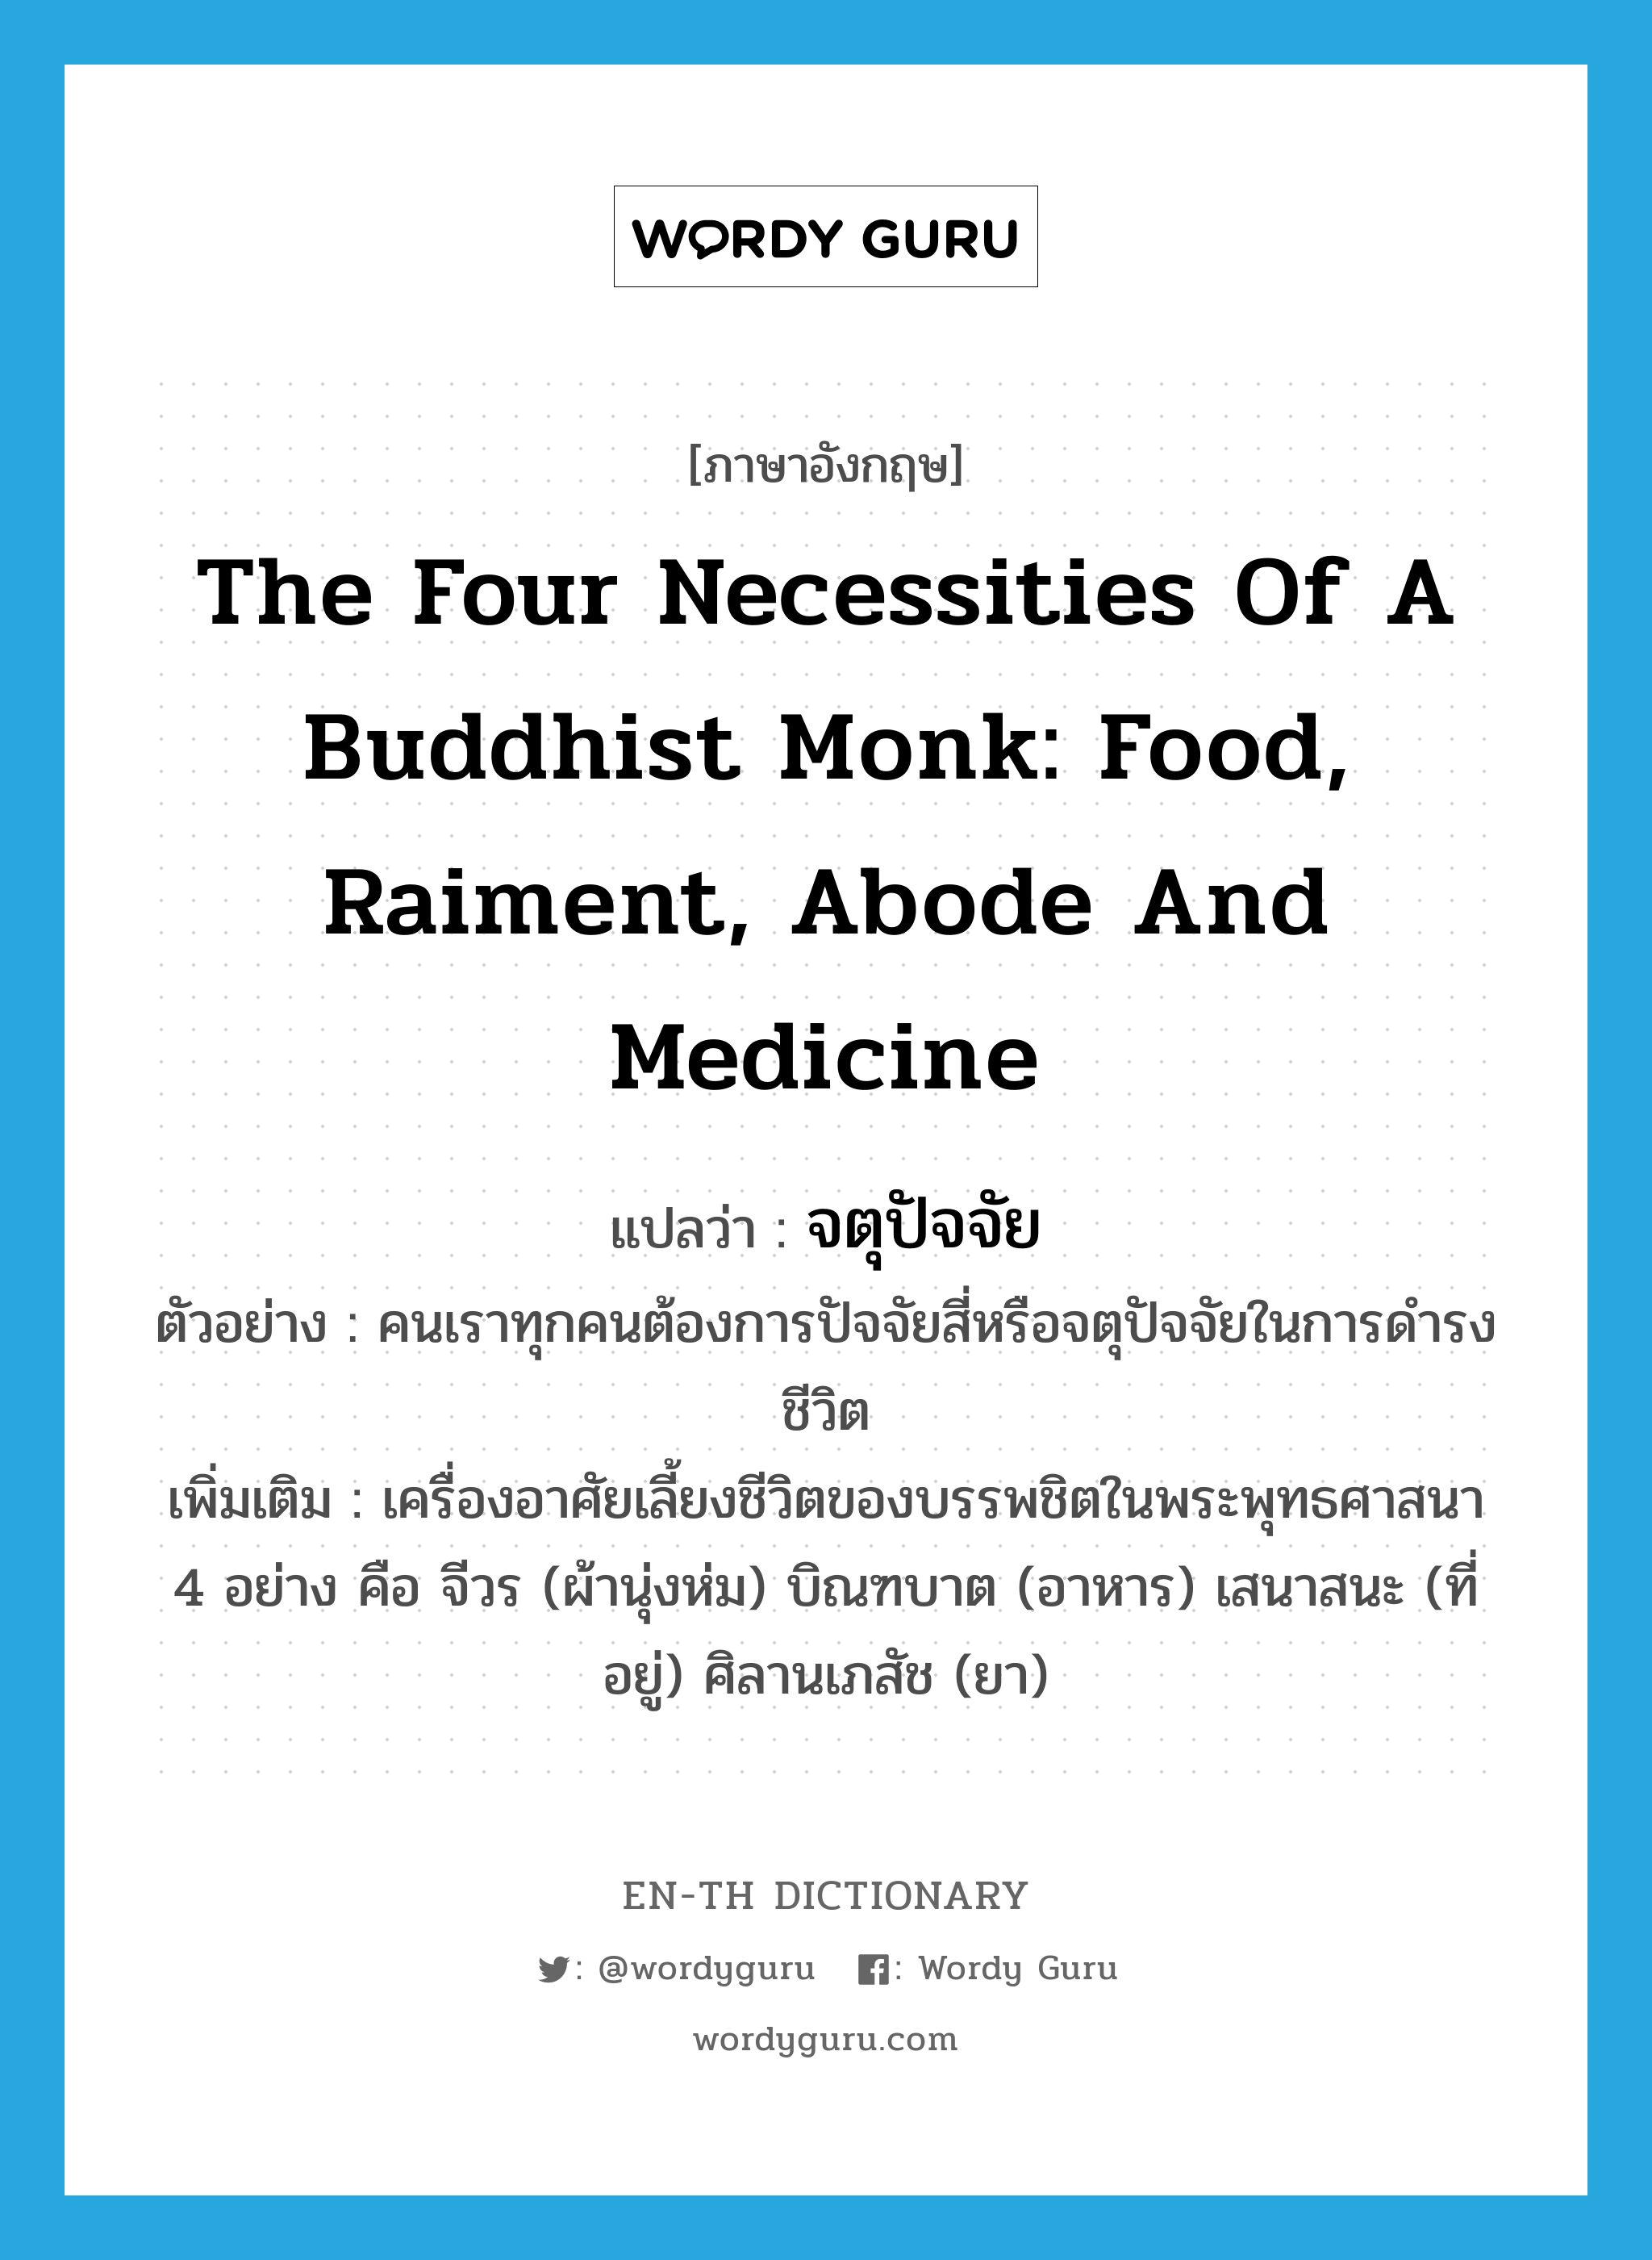 the four necessities of a Buddhist monk: food, raiment, abode and medicine แปลว่า?, คำศัพท์ภาษาอังกฤษ the four necessities of a Buddhist monk: food, raiment, abode and medicine แปลว่า จตุปัจจัย ประเภท N ตัวอย่าง คนเราทุกคนต้องการปัจจัยสี่หรือจตุปัจจัยในการดำรงชีวิต เพิ่มเติม เครื่องอาศัยเลี้ยงชีวิตของบรรพชิตในพระพุทธศาสนา 4 อย่าง คือ จีวร (ผ้านุ่งห่ม) บิณฑบาต (อาหาร) เสนาสนะ (ที่อยู่) ศิลานเภสัช (ยา) หมวด N